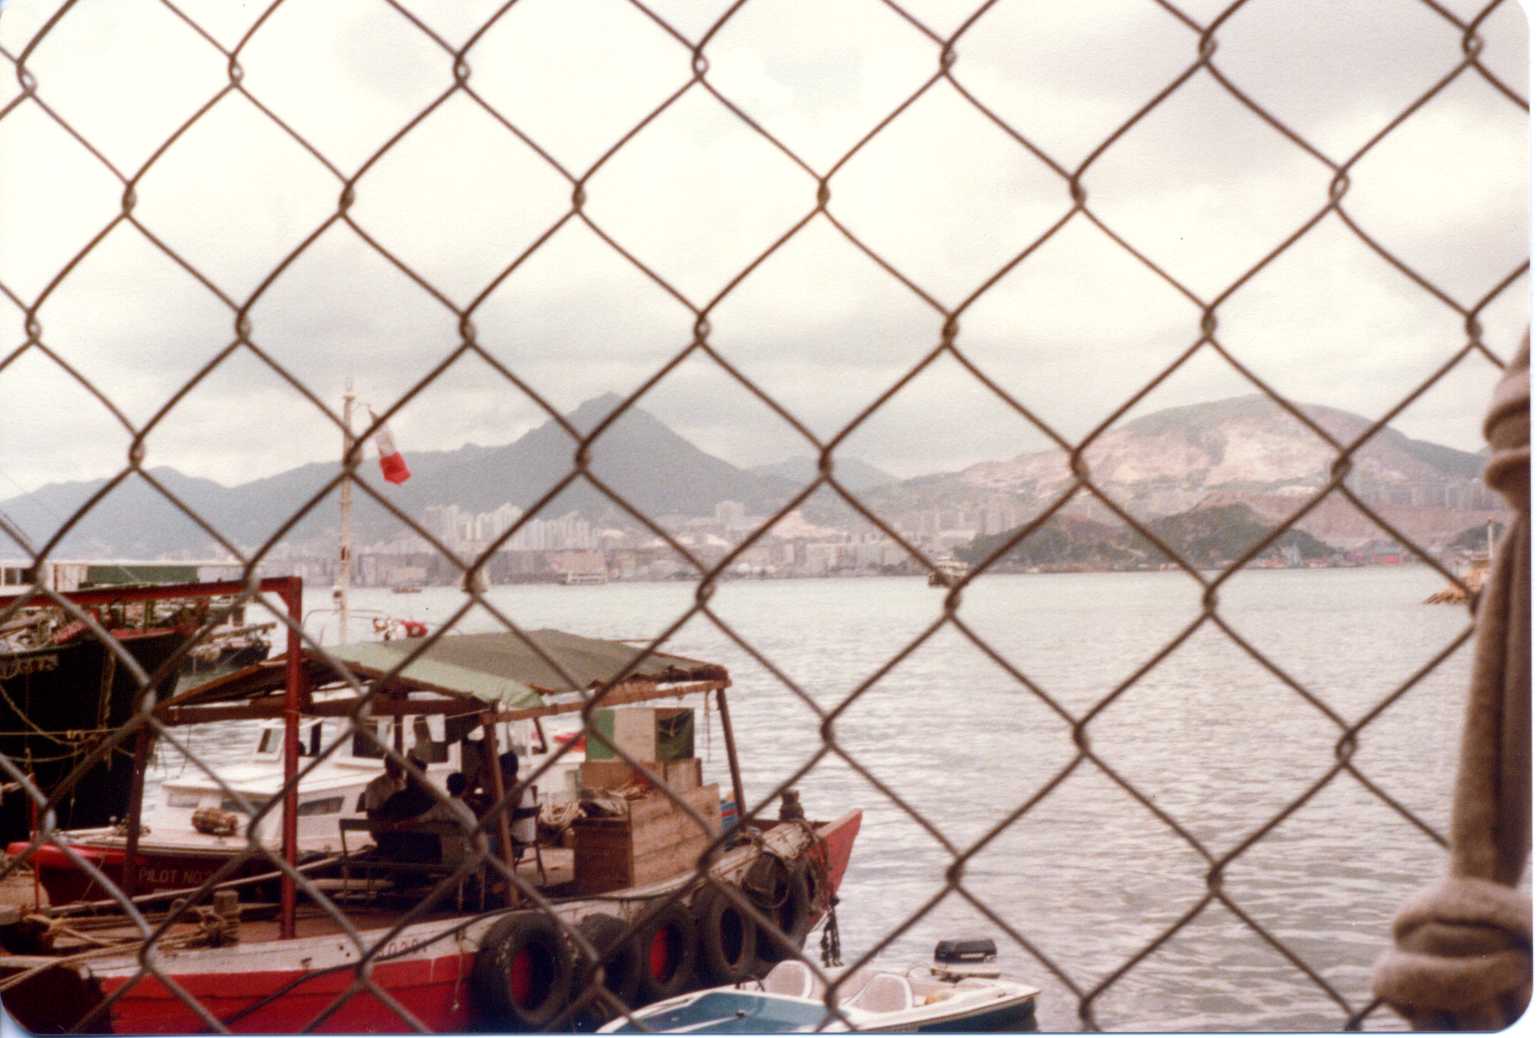 img 1980 Hong Kong North Point typhoon shelter463